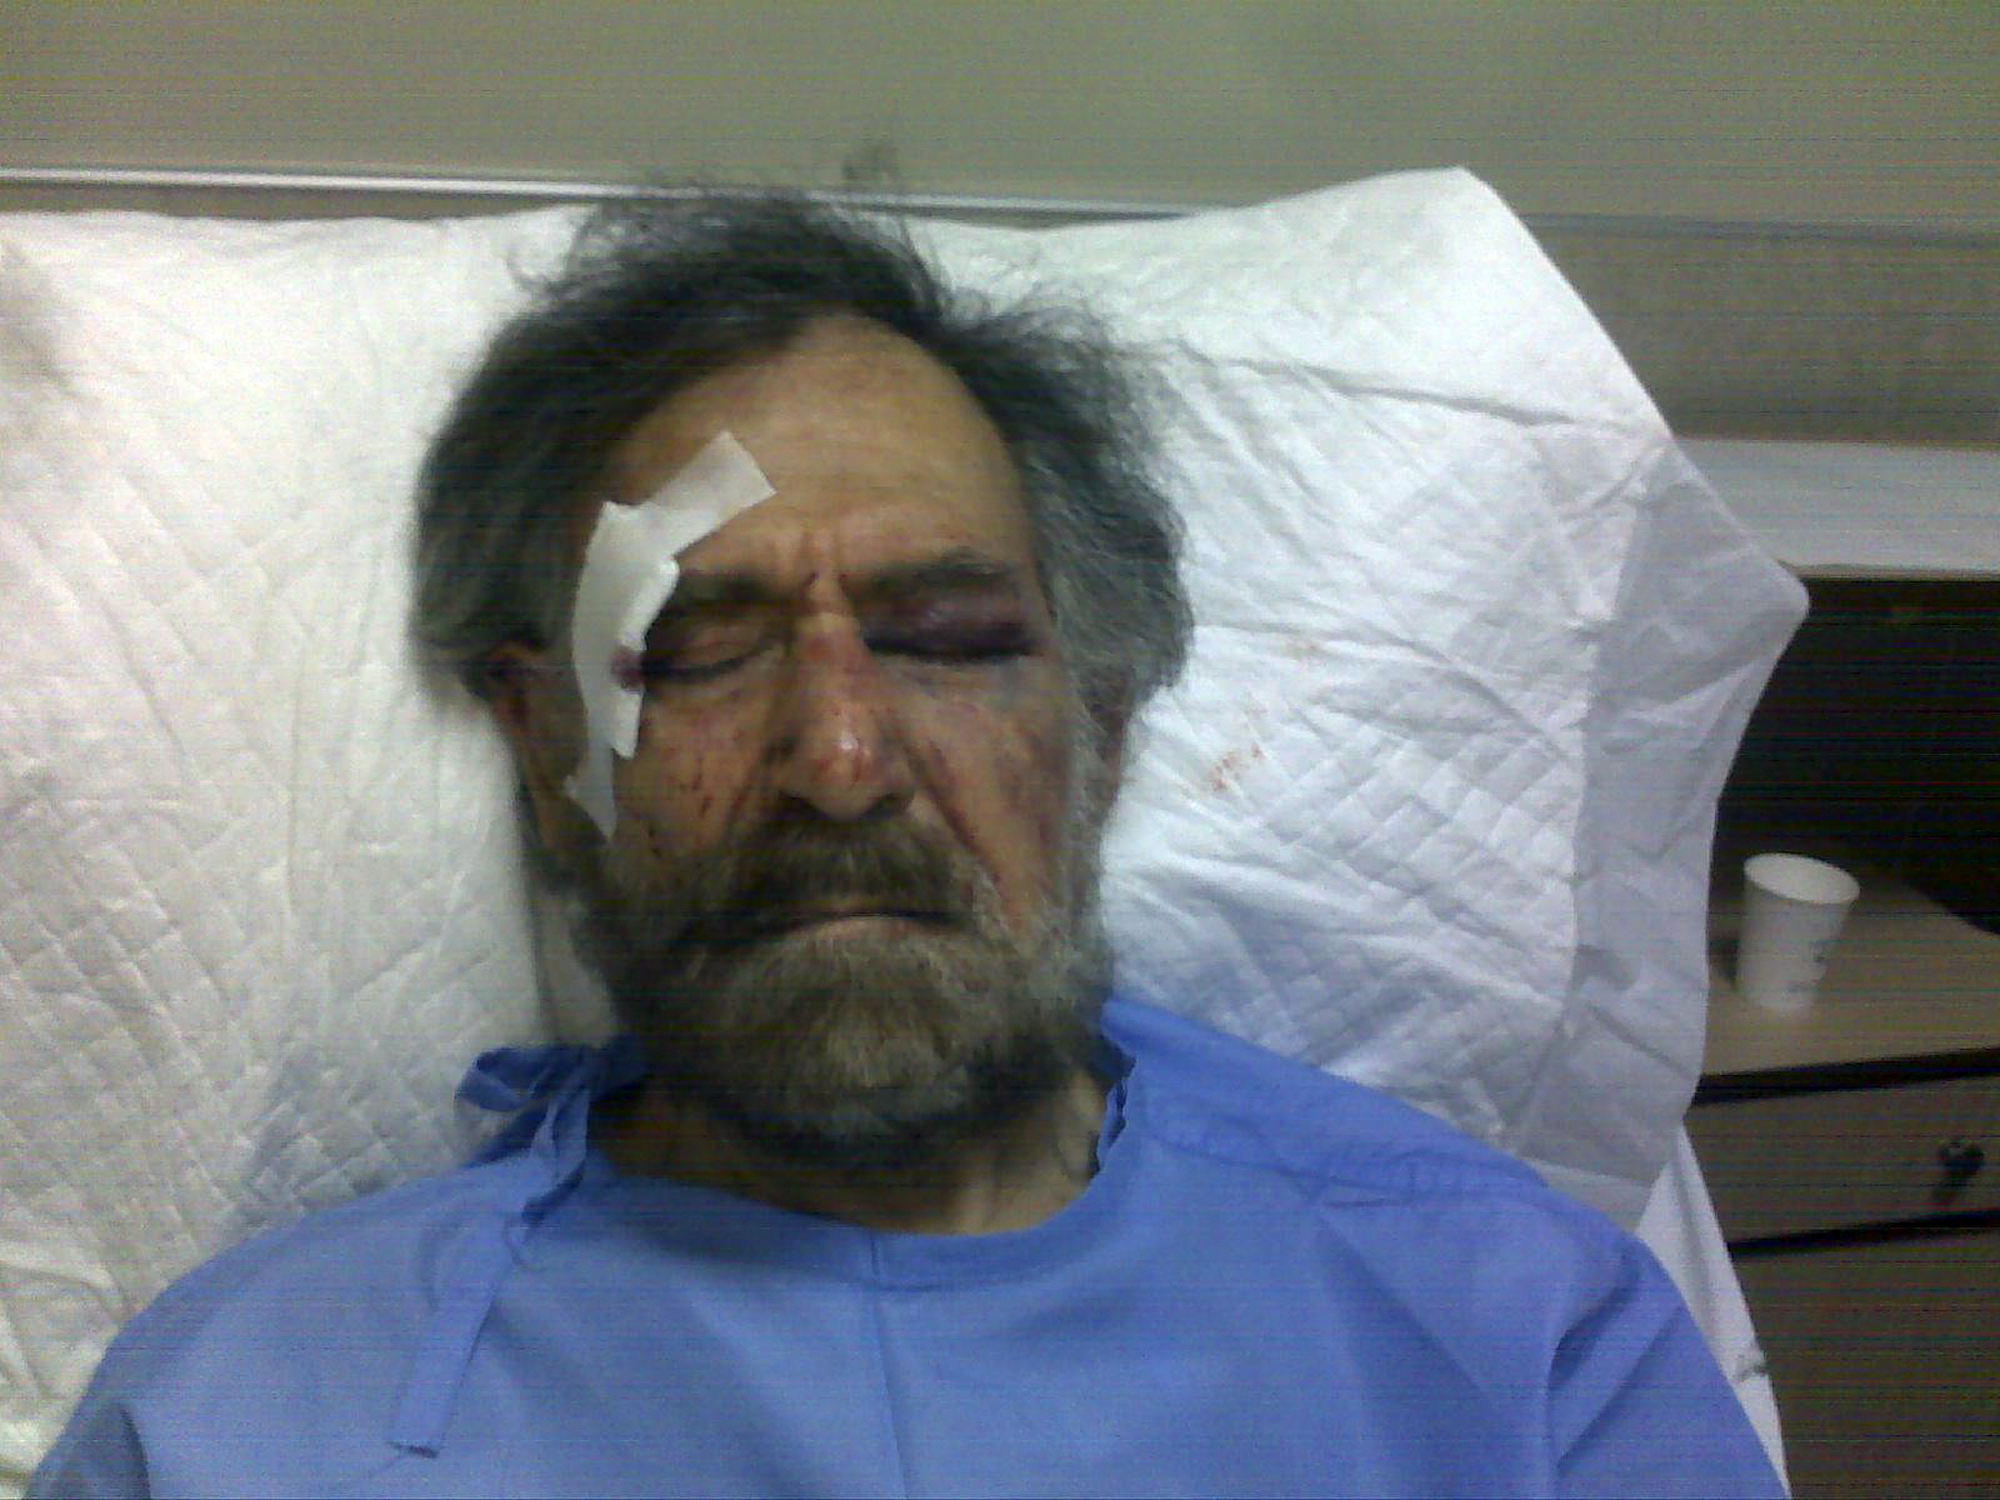 Den politiska tecknaren Ali Ferzat misshandlades under torsdagen av flera regimtrogna män som var beväpnade.